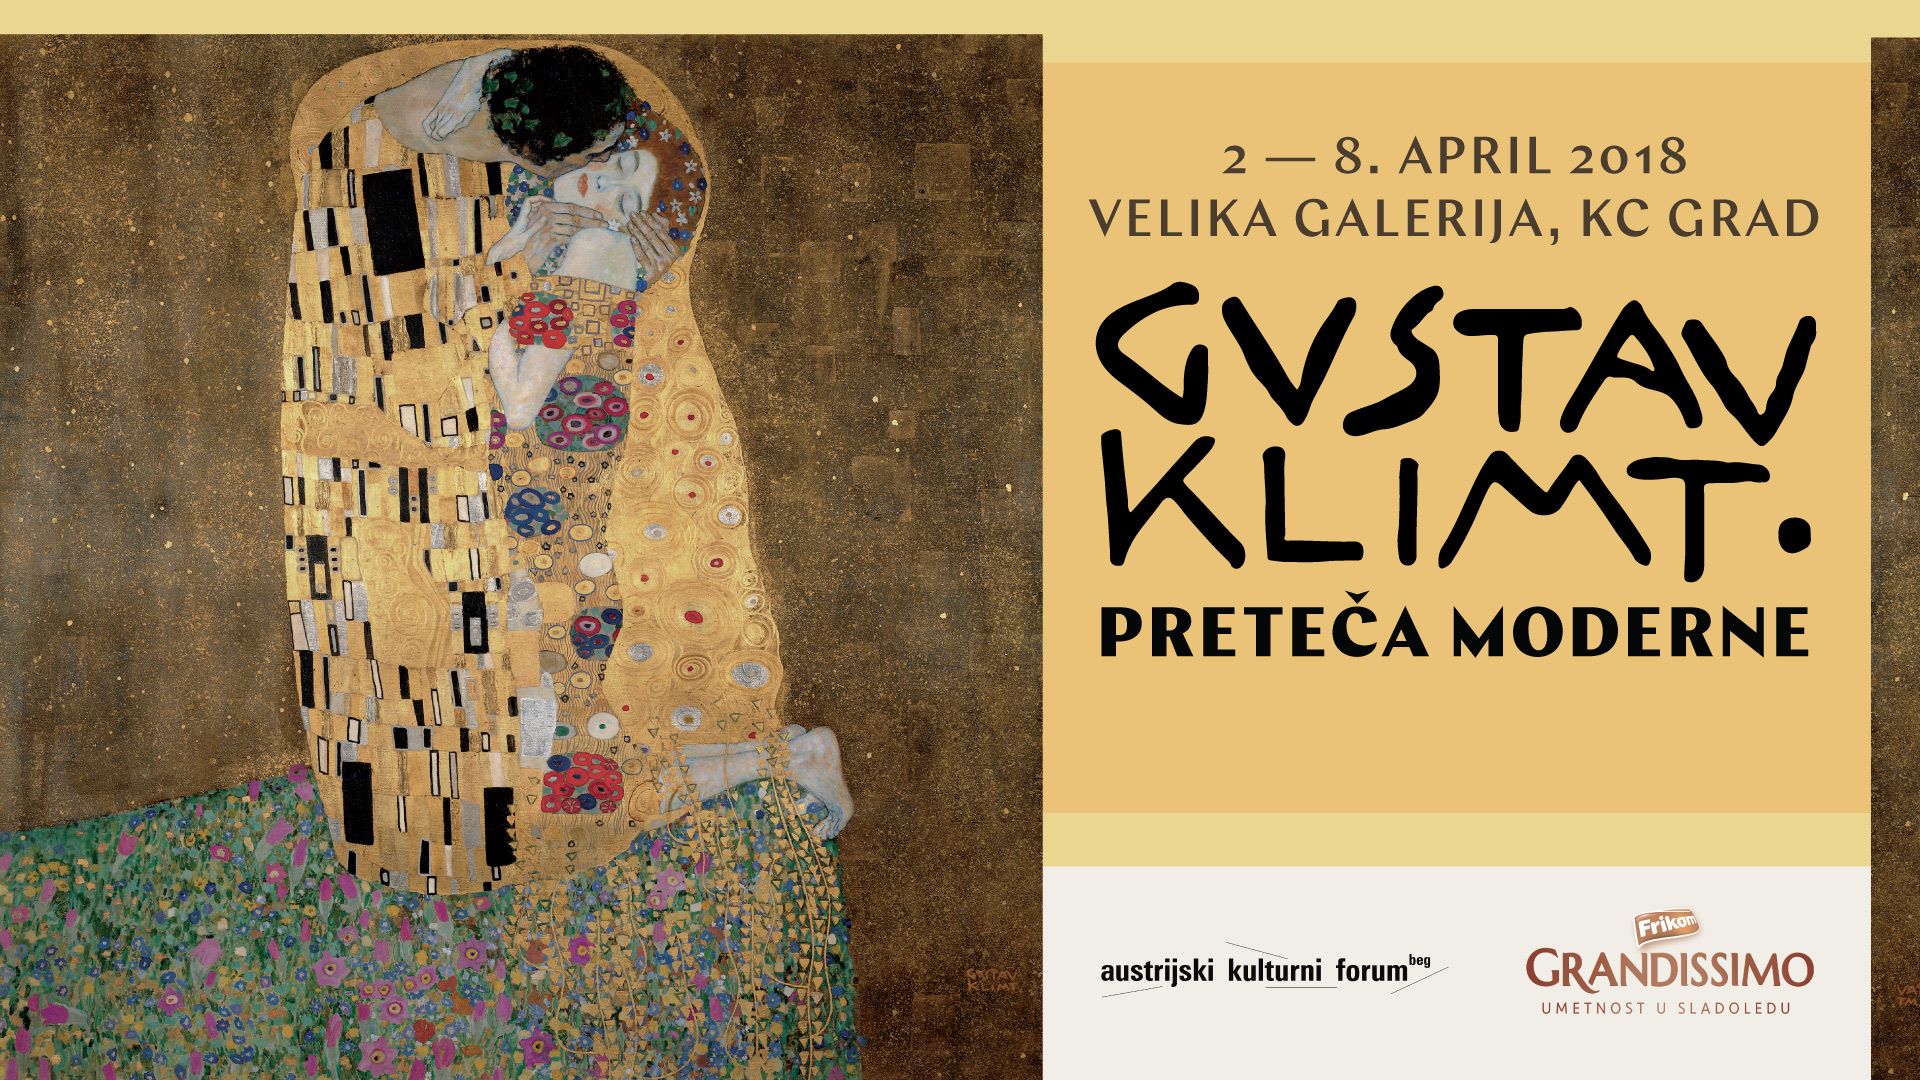 [:en]Gustav Klimt, Modernism Predecessor 02 – 08.04.2018.CC Grad